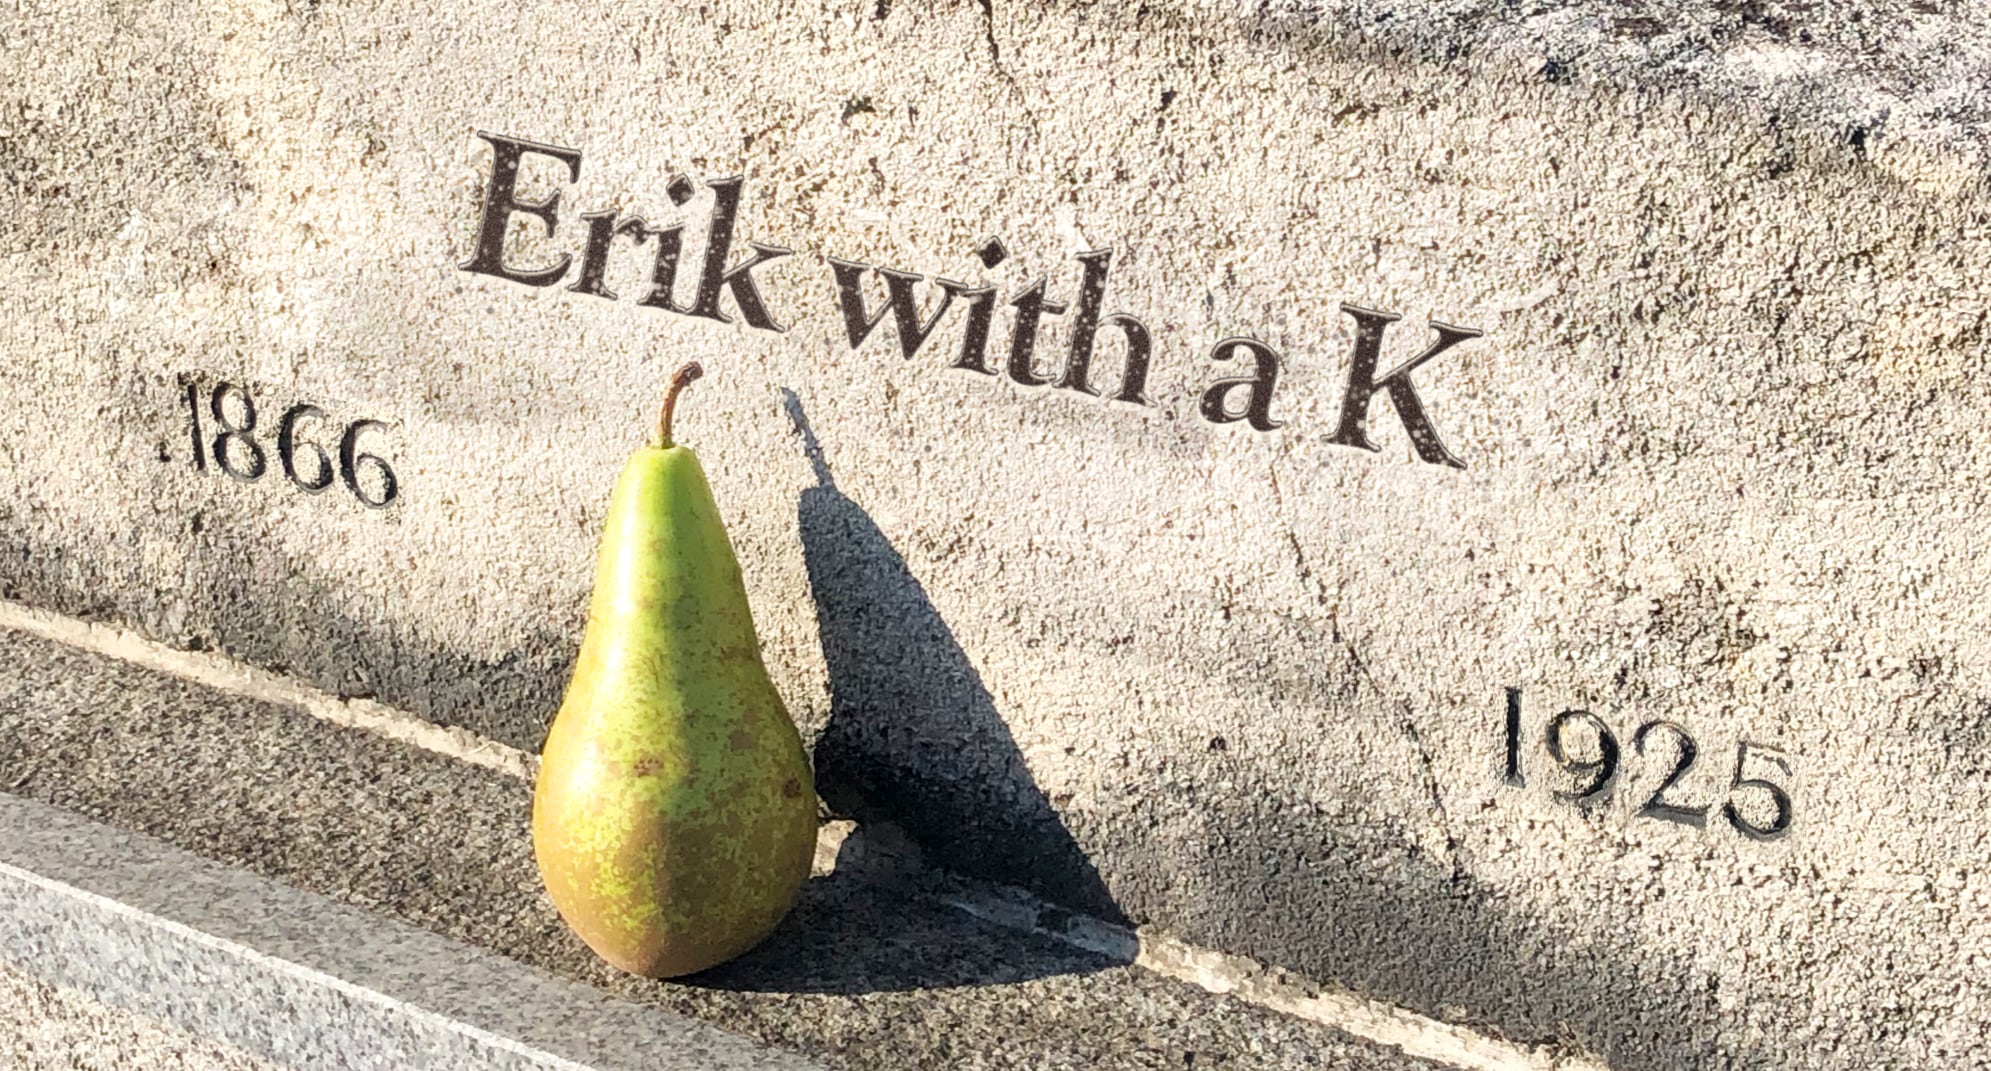 erik with a k